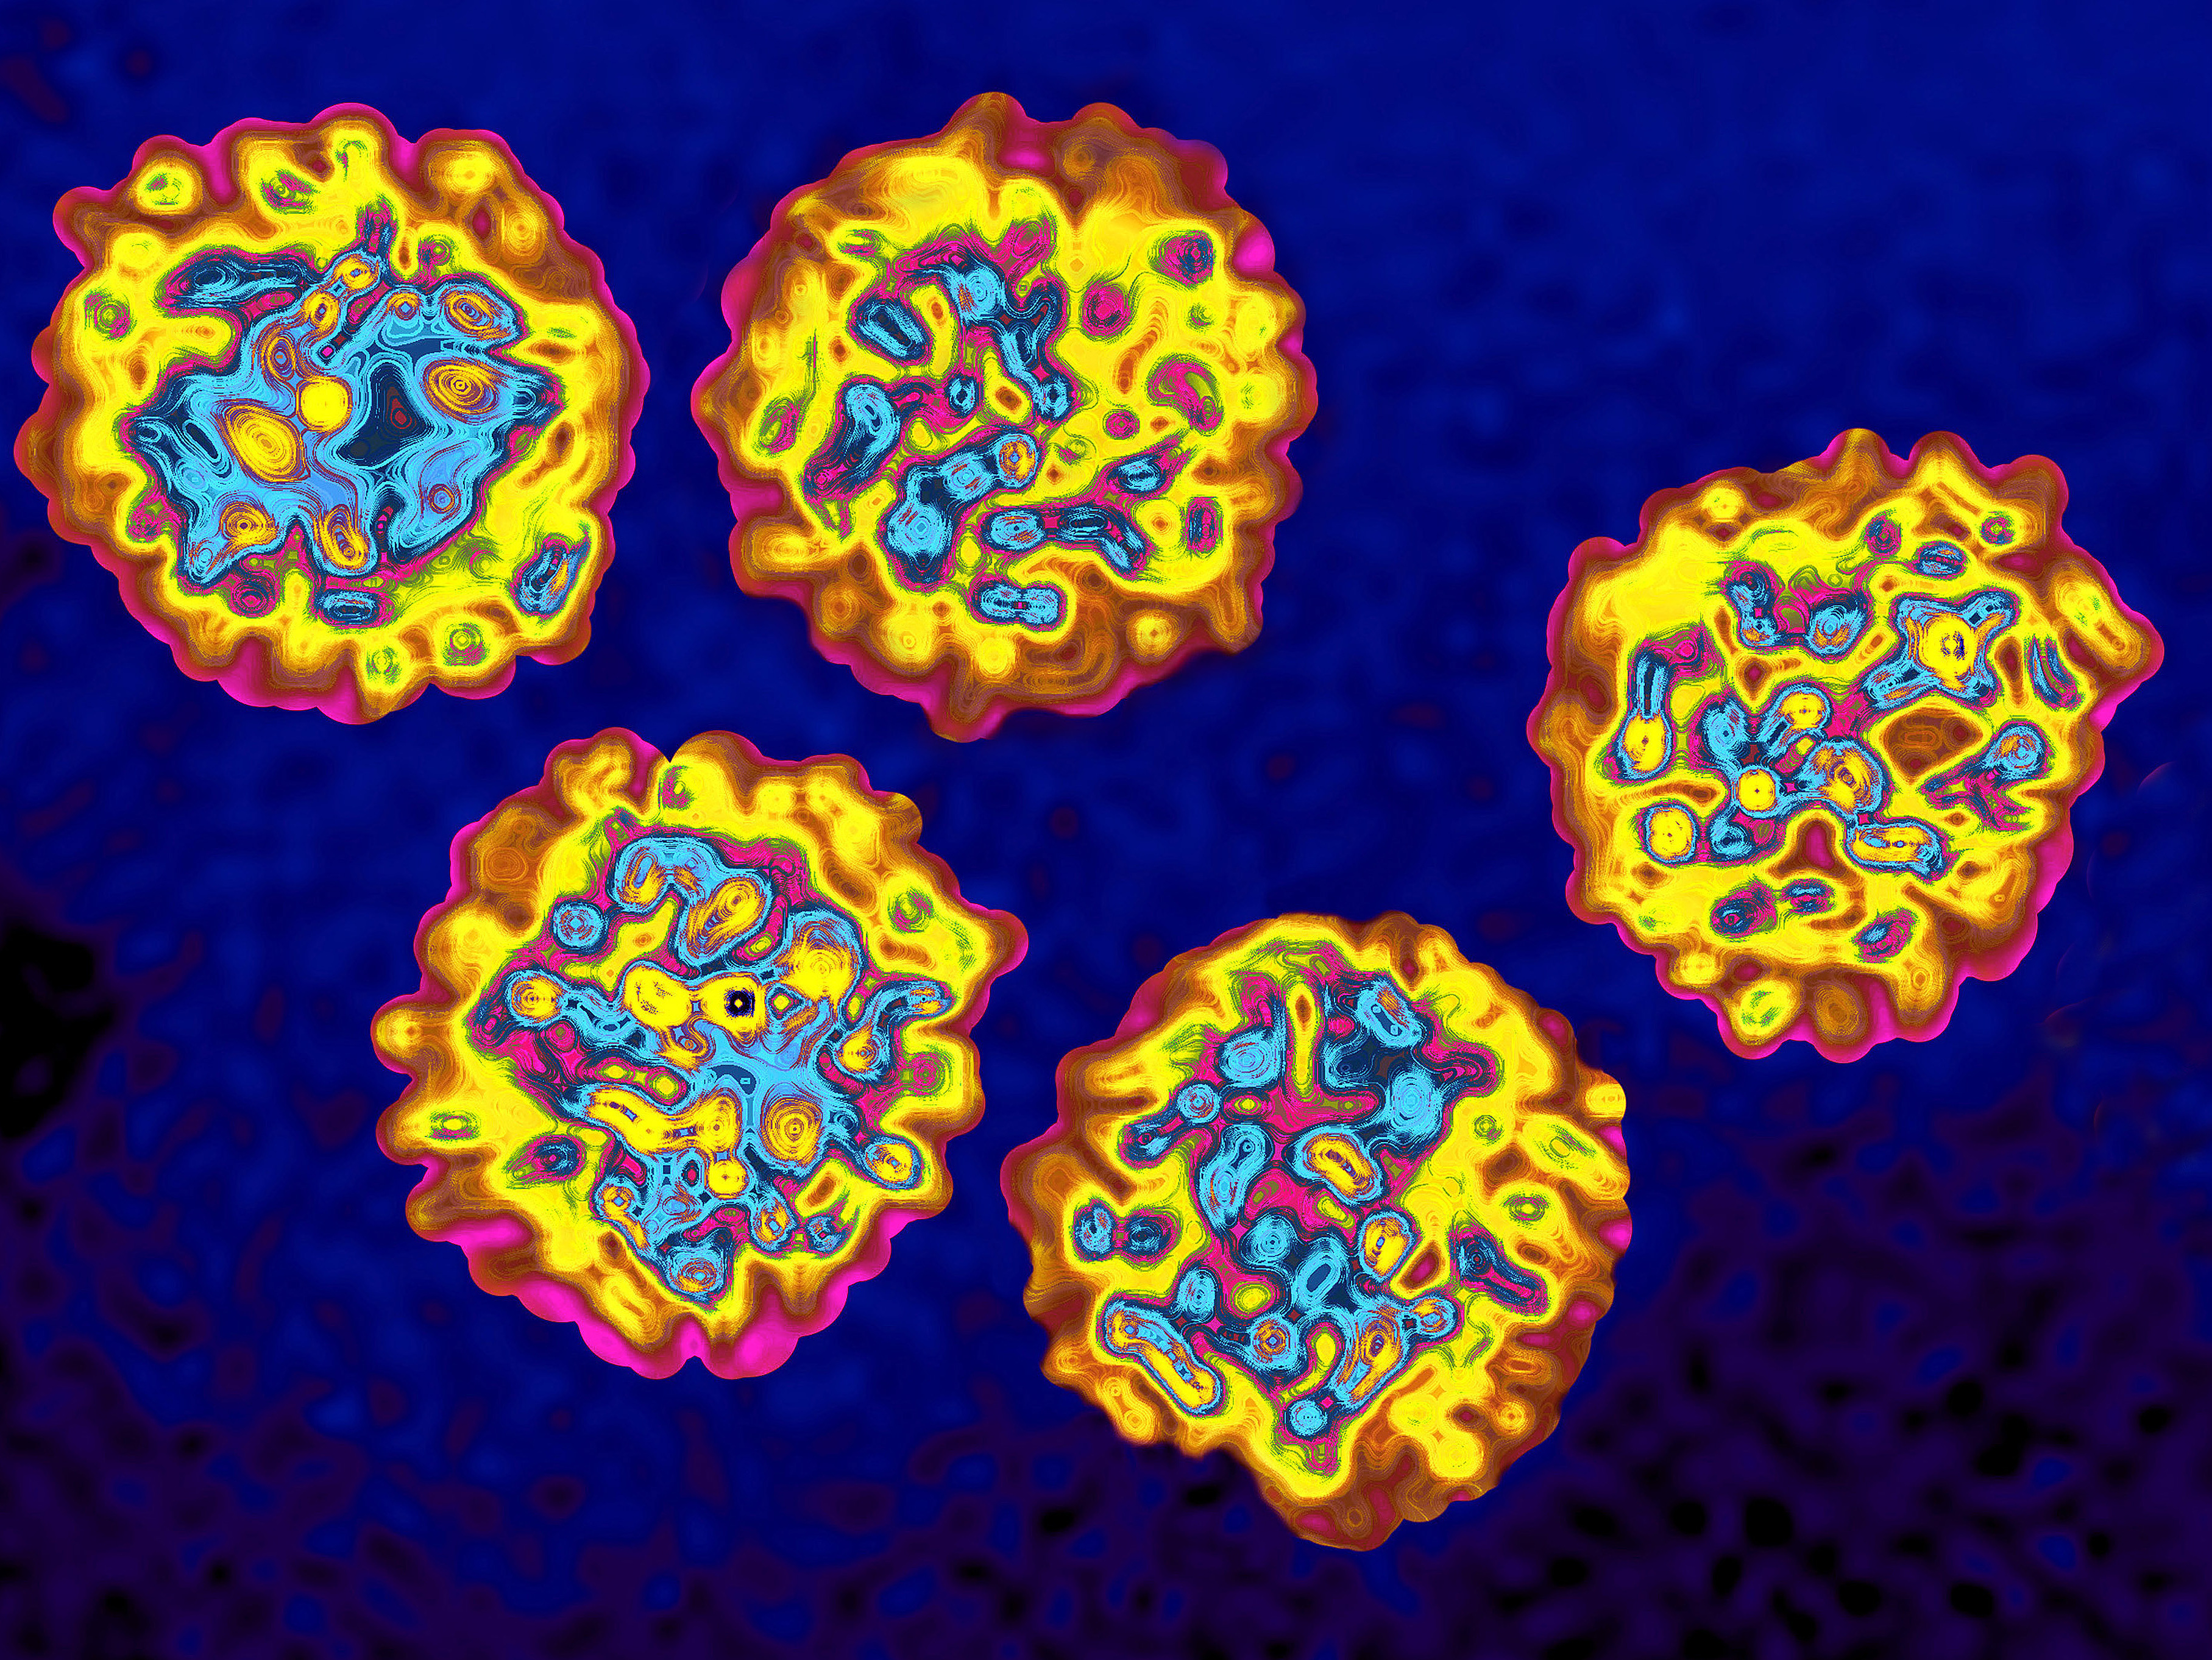 Гепатит в мире. Вирус гепатита под микроскопом. Вирус гепатита b под микроскопом. Вирус гепатита б под микроскопом. Вирус гепатита c под микроскопом.